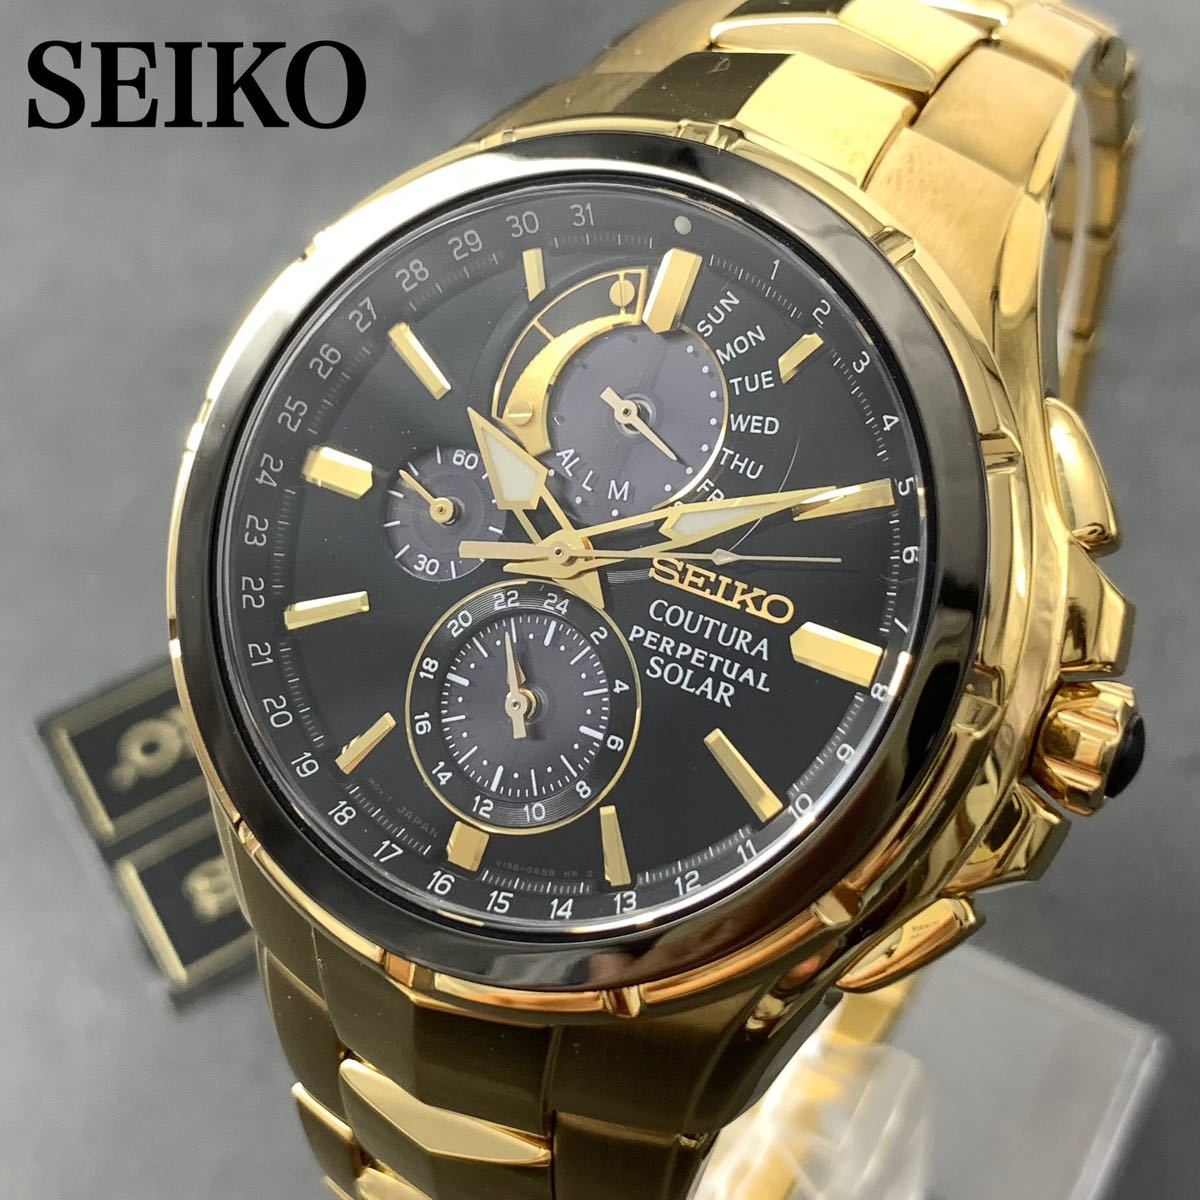 【新品訳あり】セイコー上級コーチュラ SSC700 パーペチュアル クロノグラフ ソーラー SEIKO メンズ腕時計 ゴールド_画像1